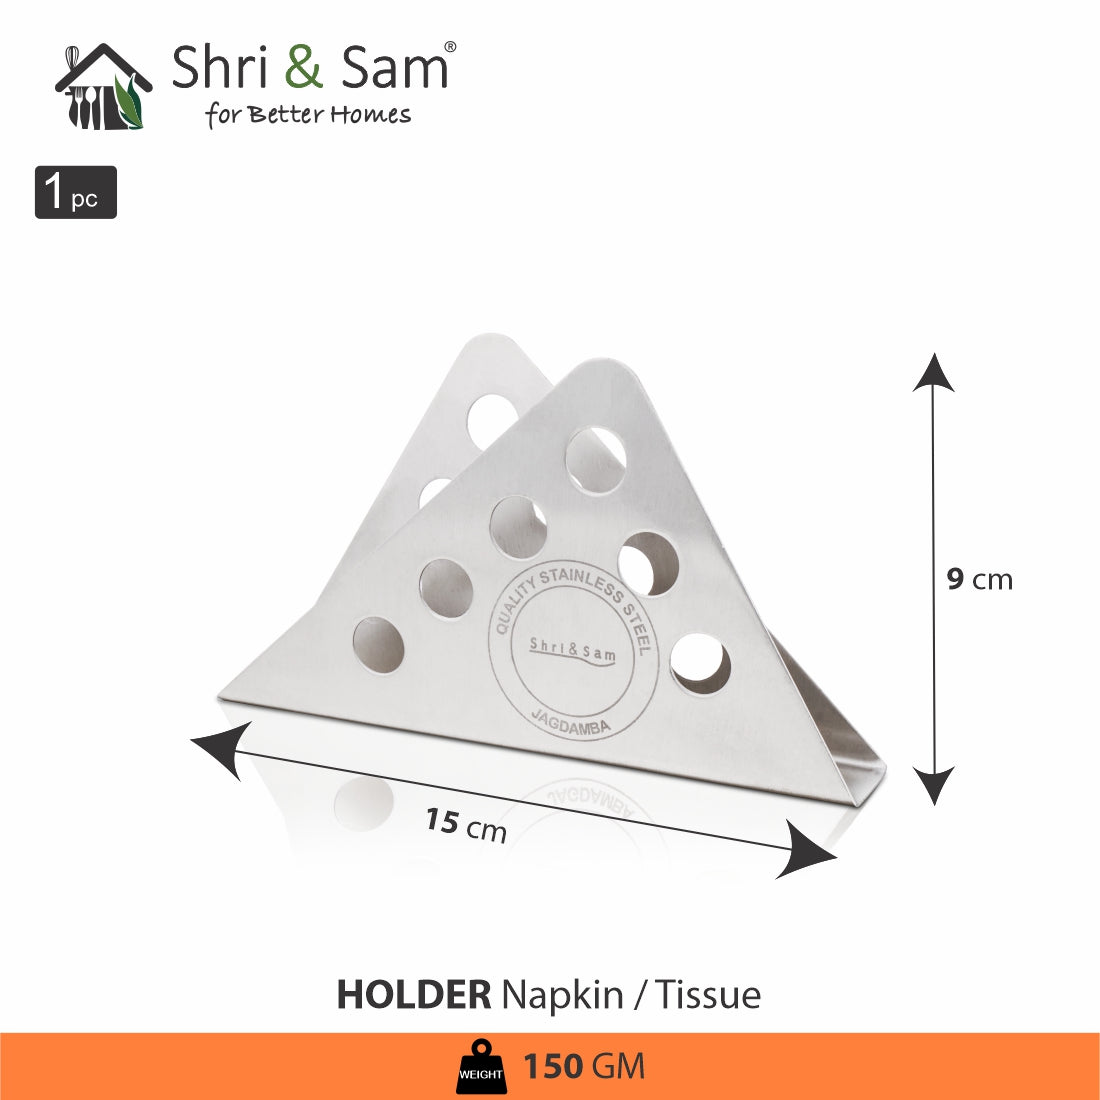 Stainless Steel Napkin or Tissue Holder Tera